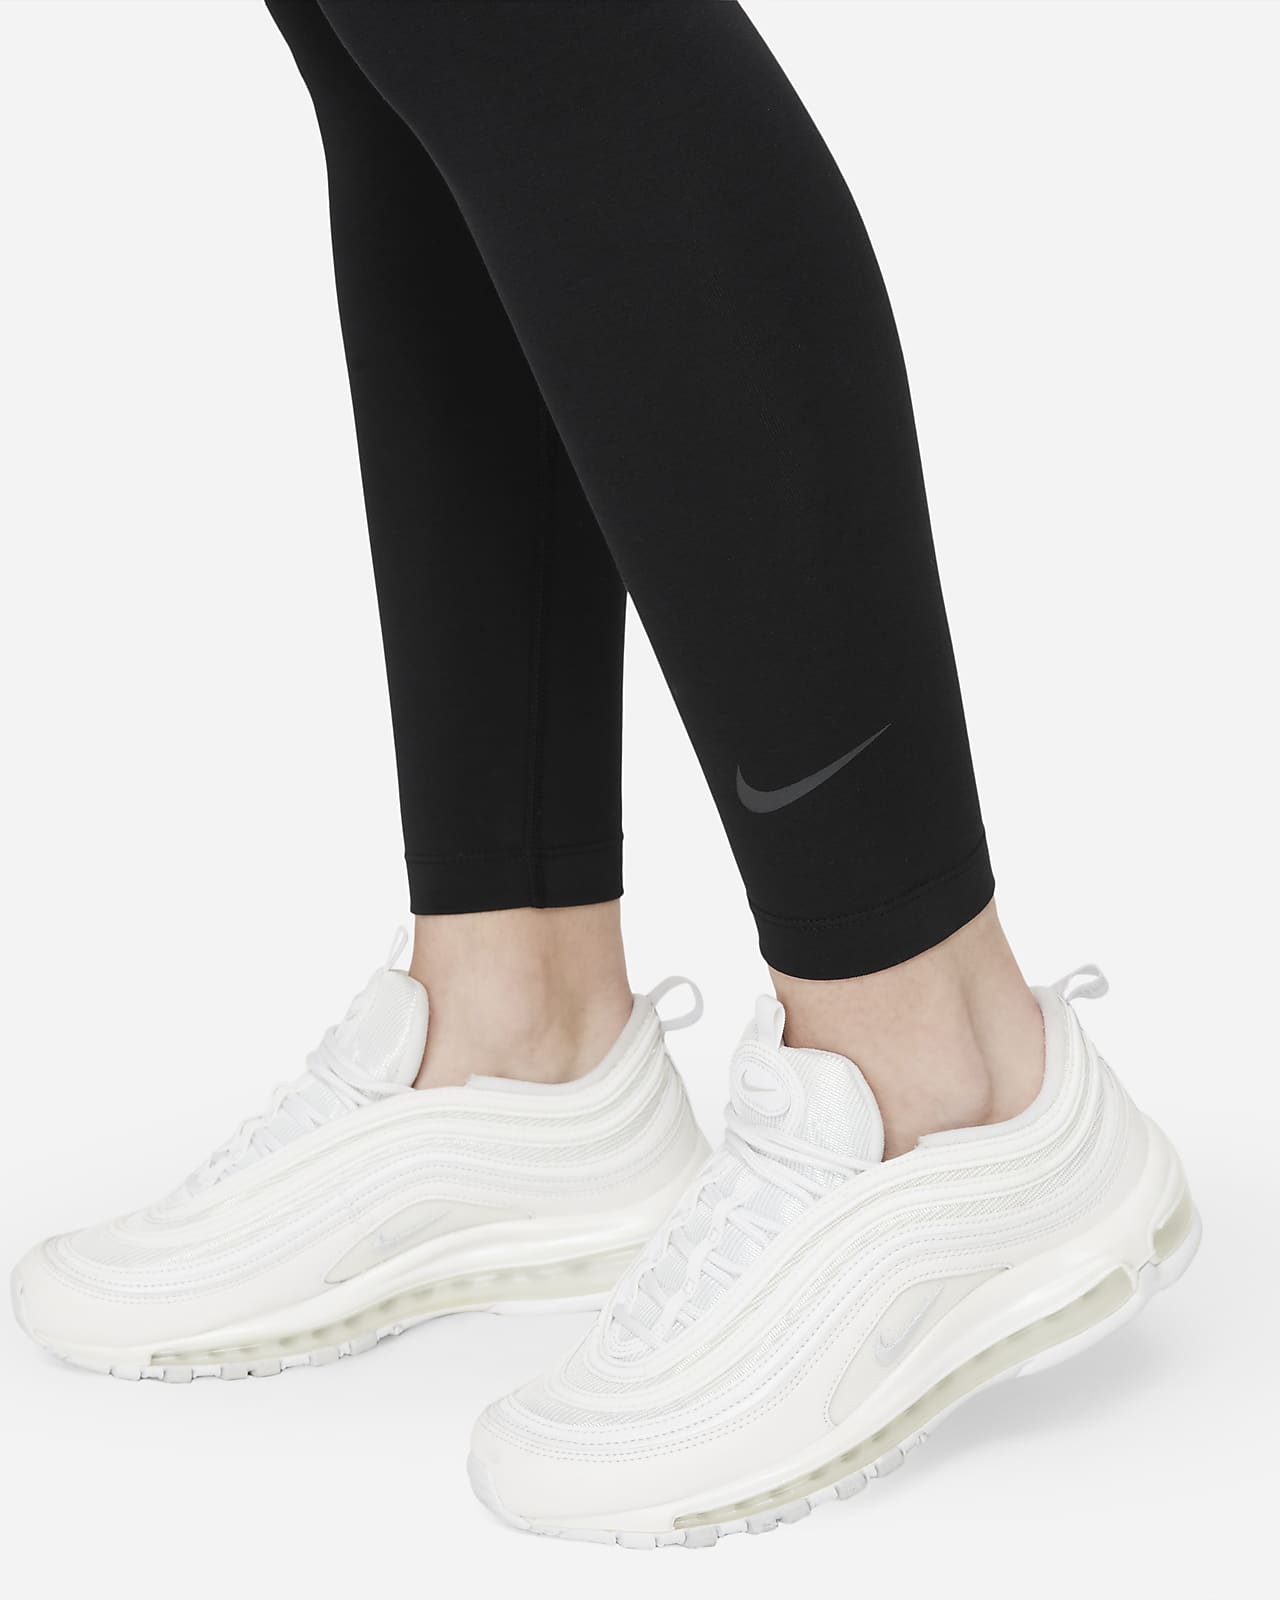 Legging Nike Sportswear Club Swoos Cinza - Compre Agora